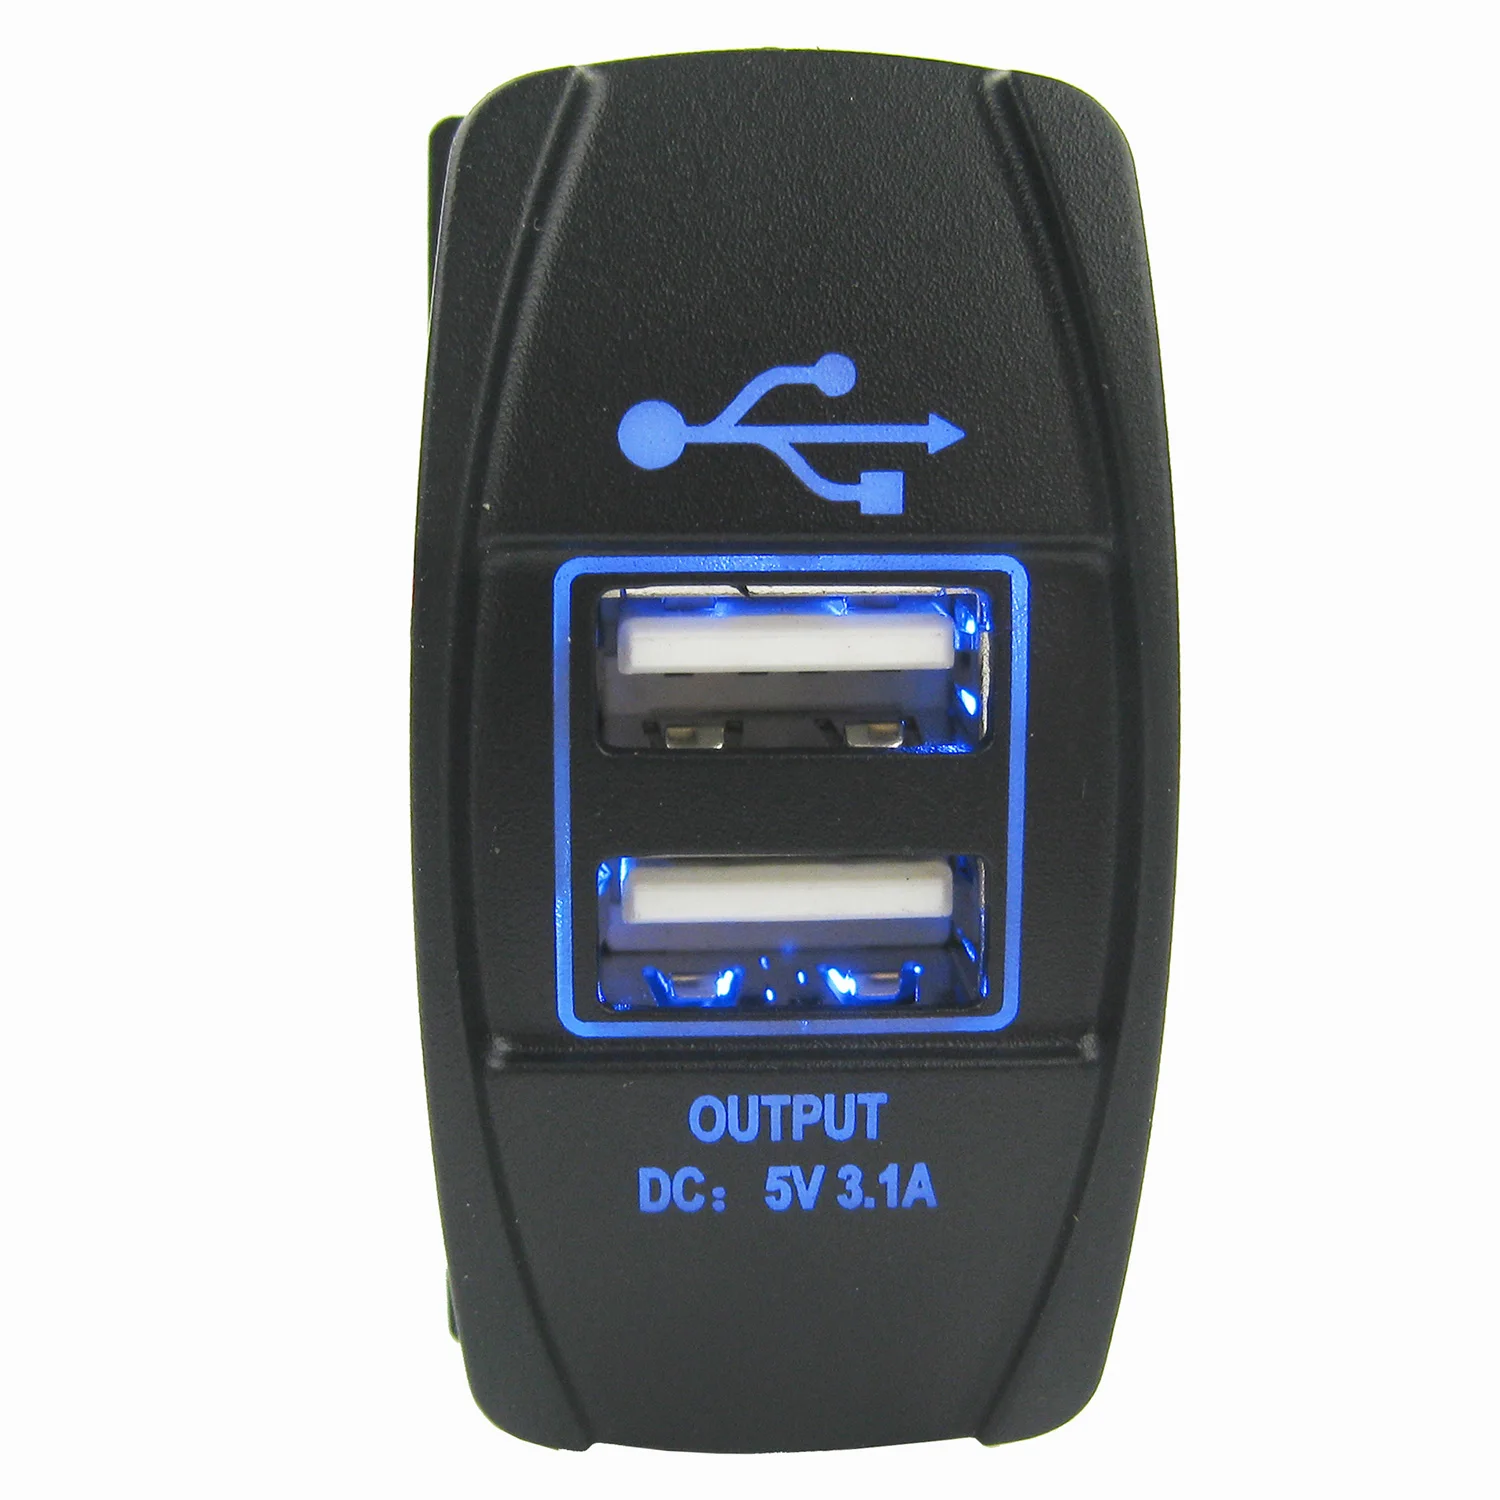 5V 3.1A Двойная двухпортовая панель USB-зарядного устройства для морской лодки RV Car